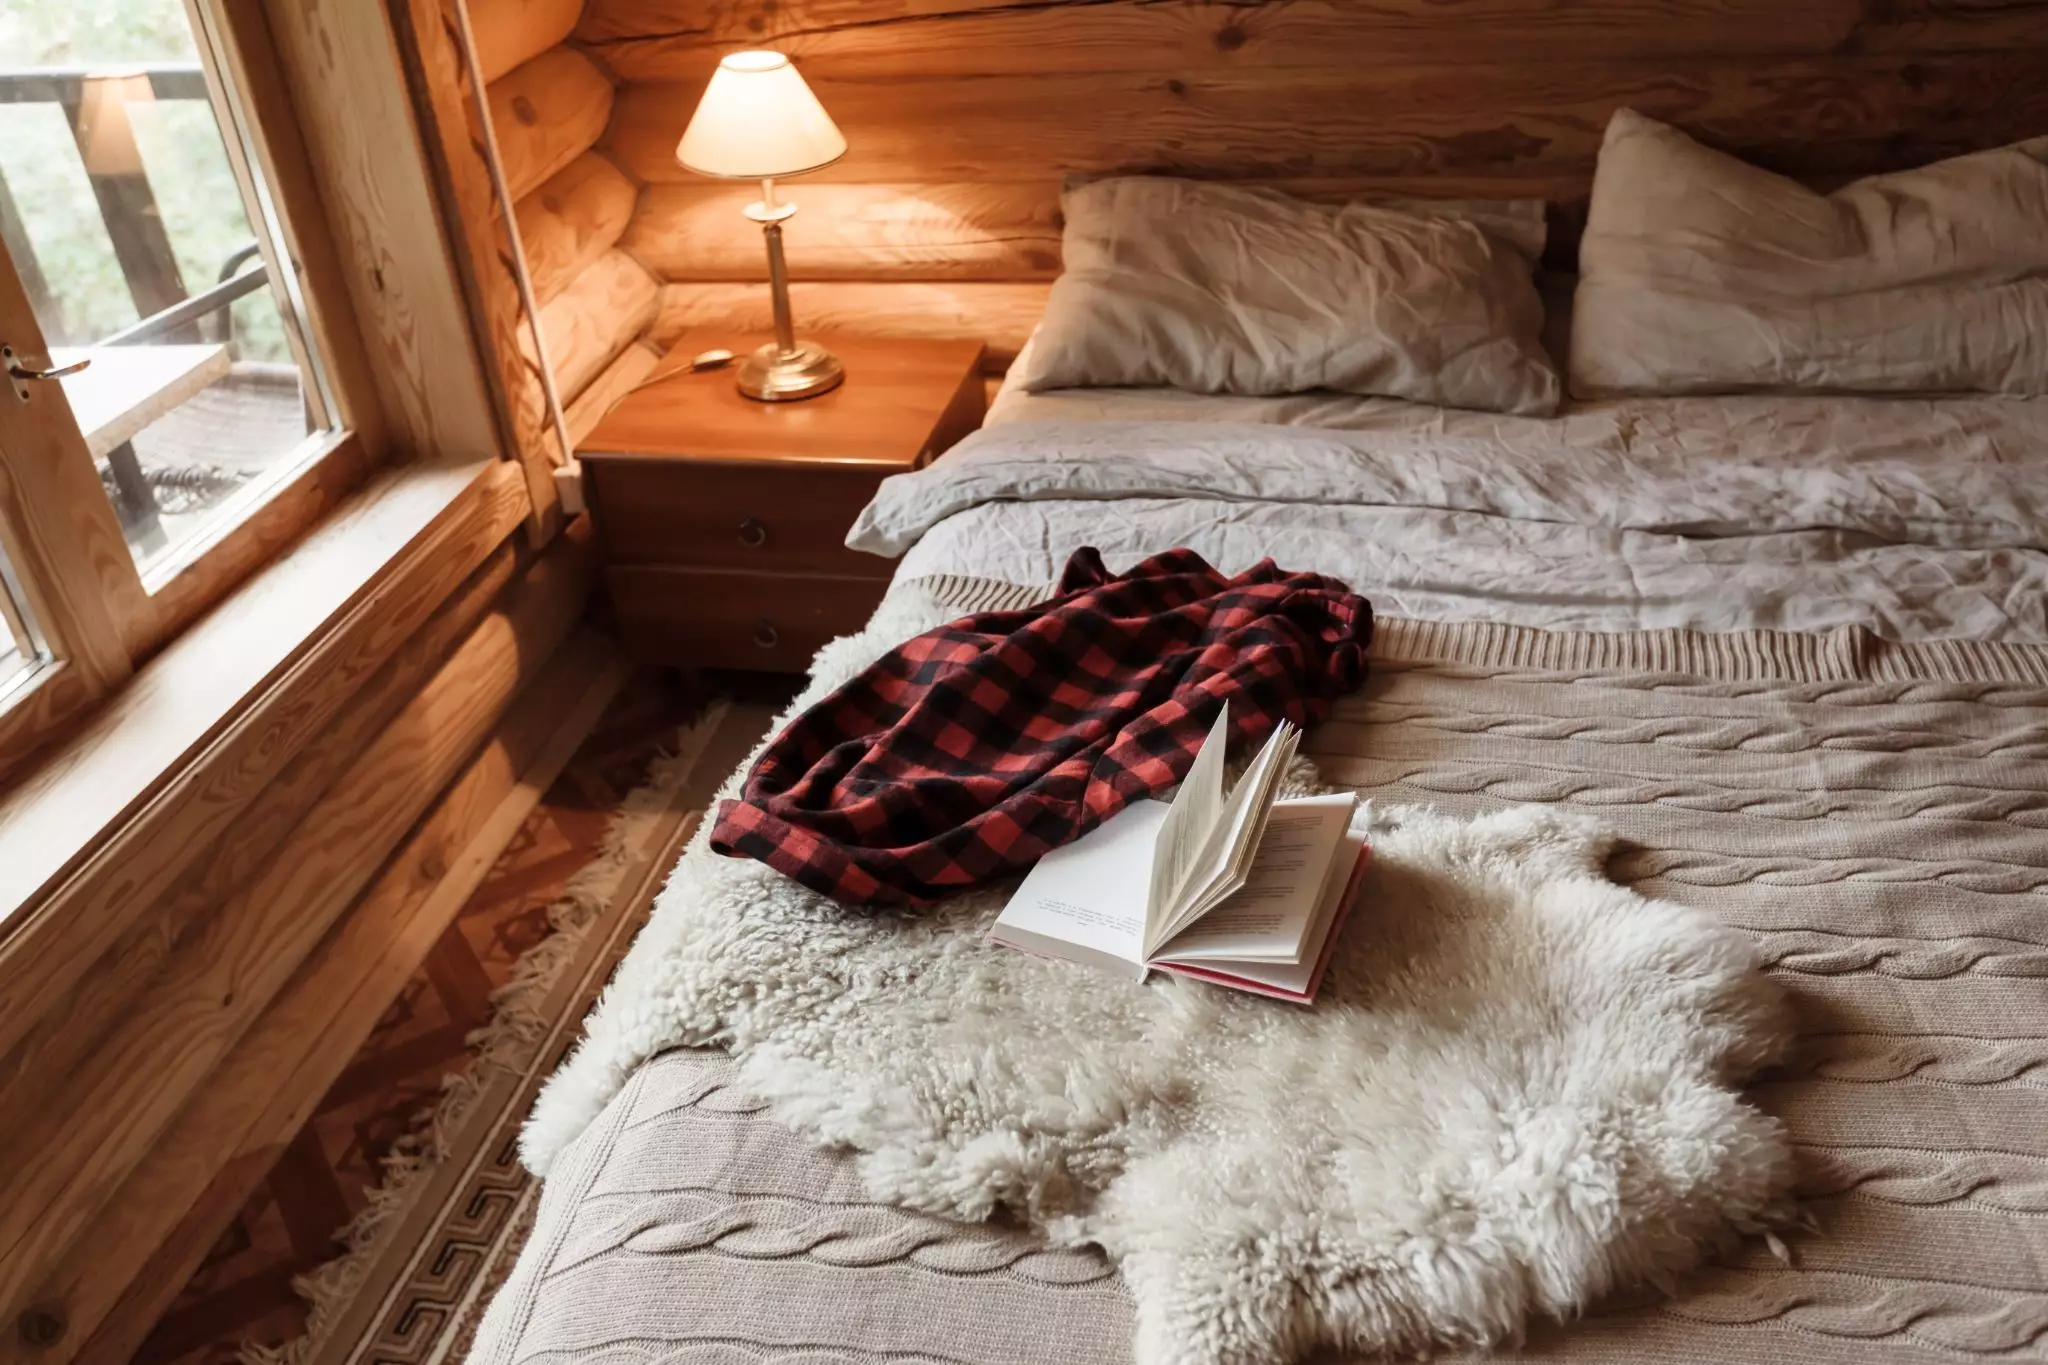 Tác phẩm tạo điểm nhấn cho phòng ngủ phong cách Rustic với những đồ trang trí nhỏ xinh